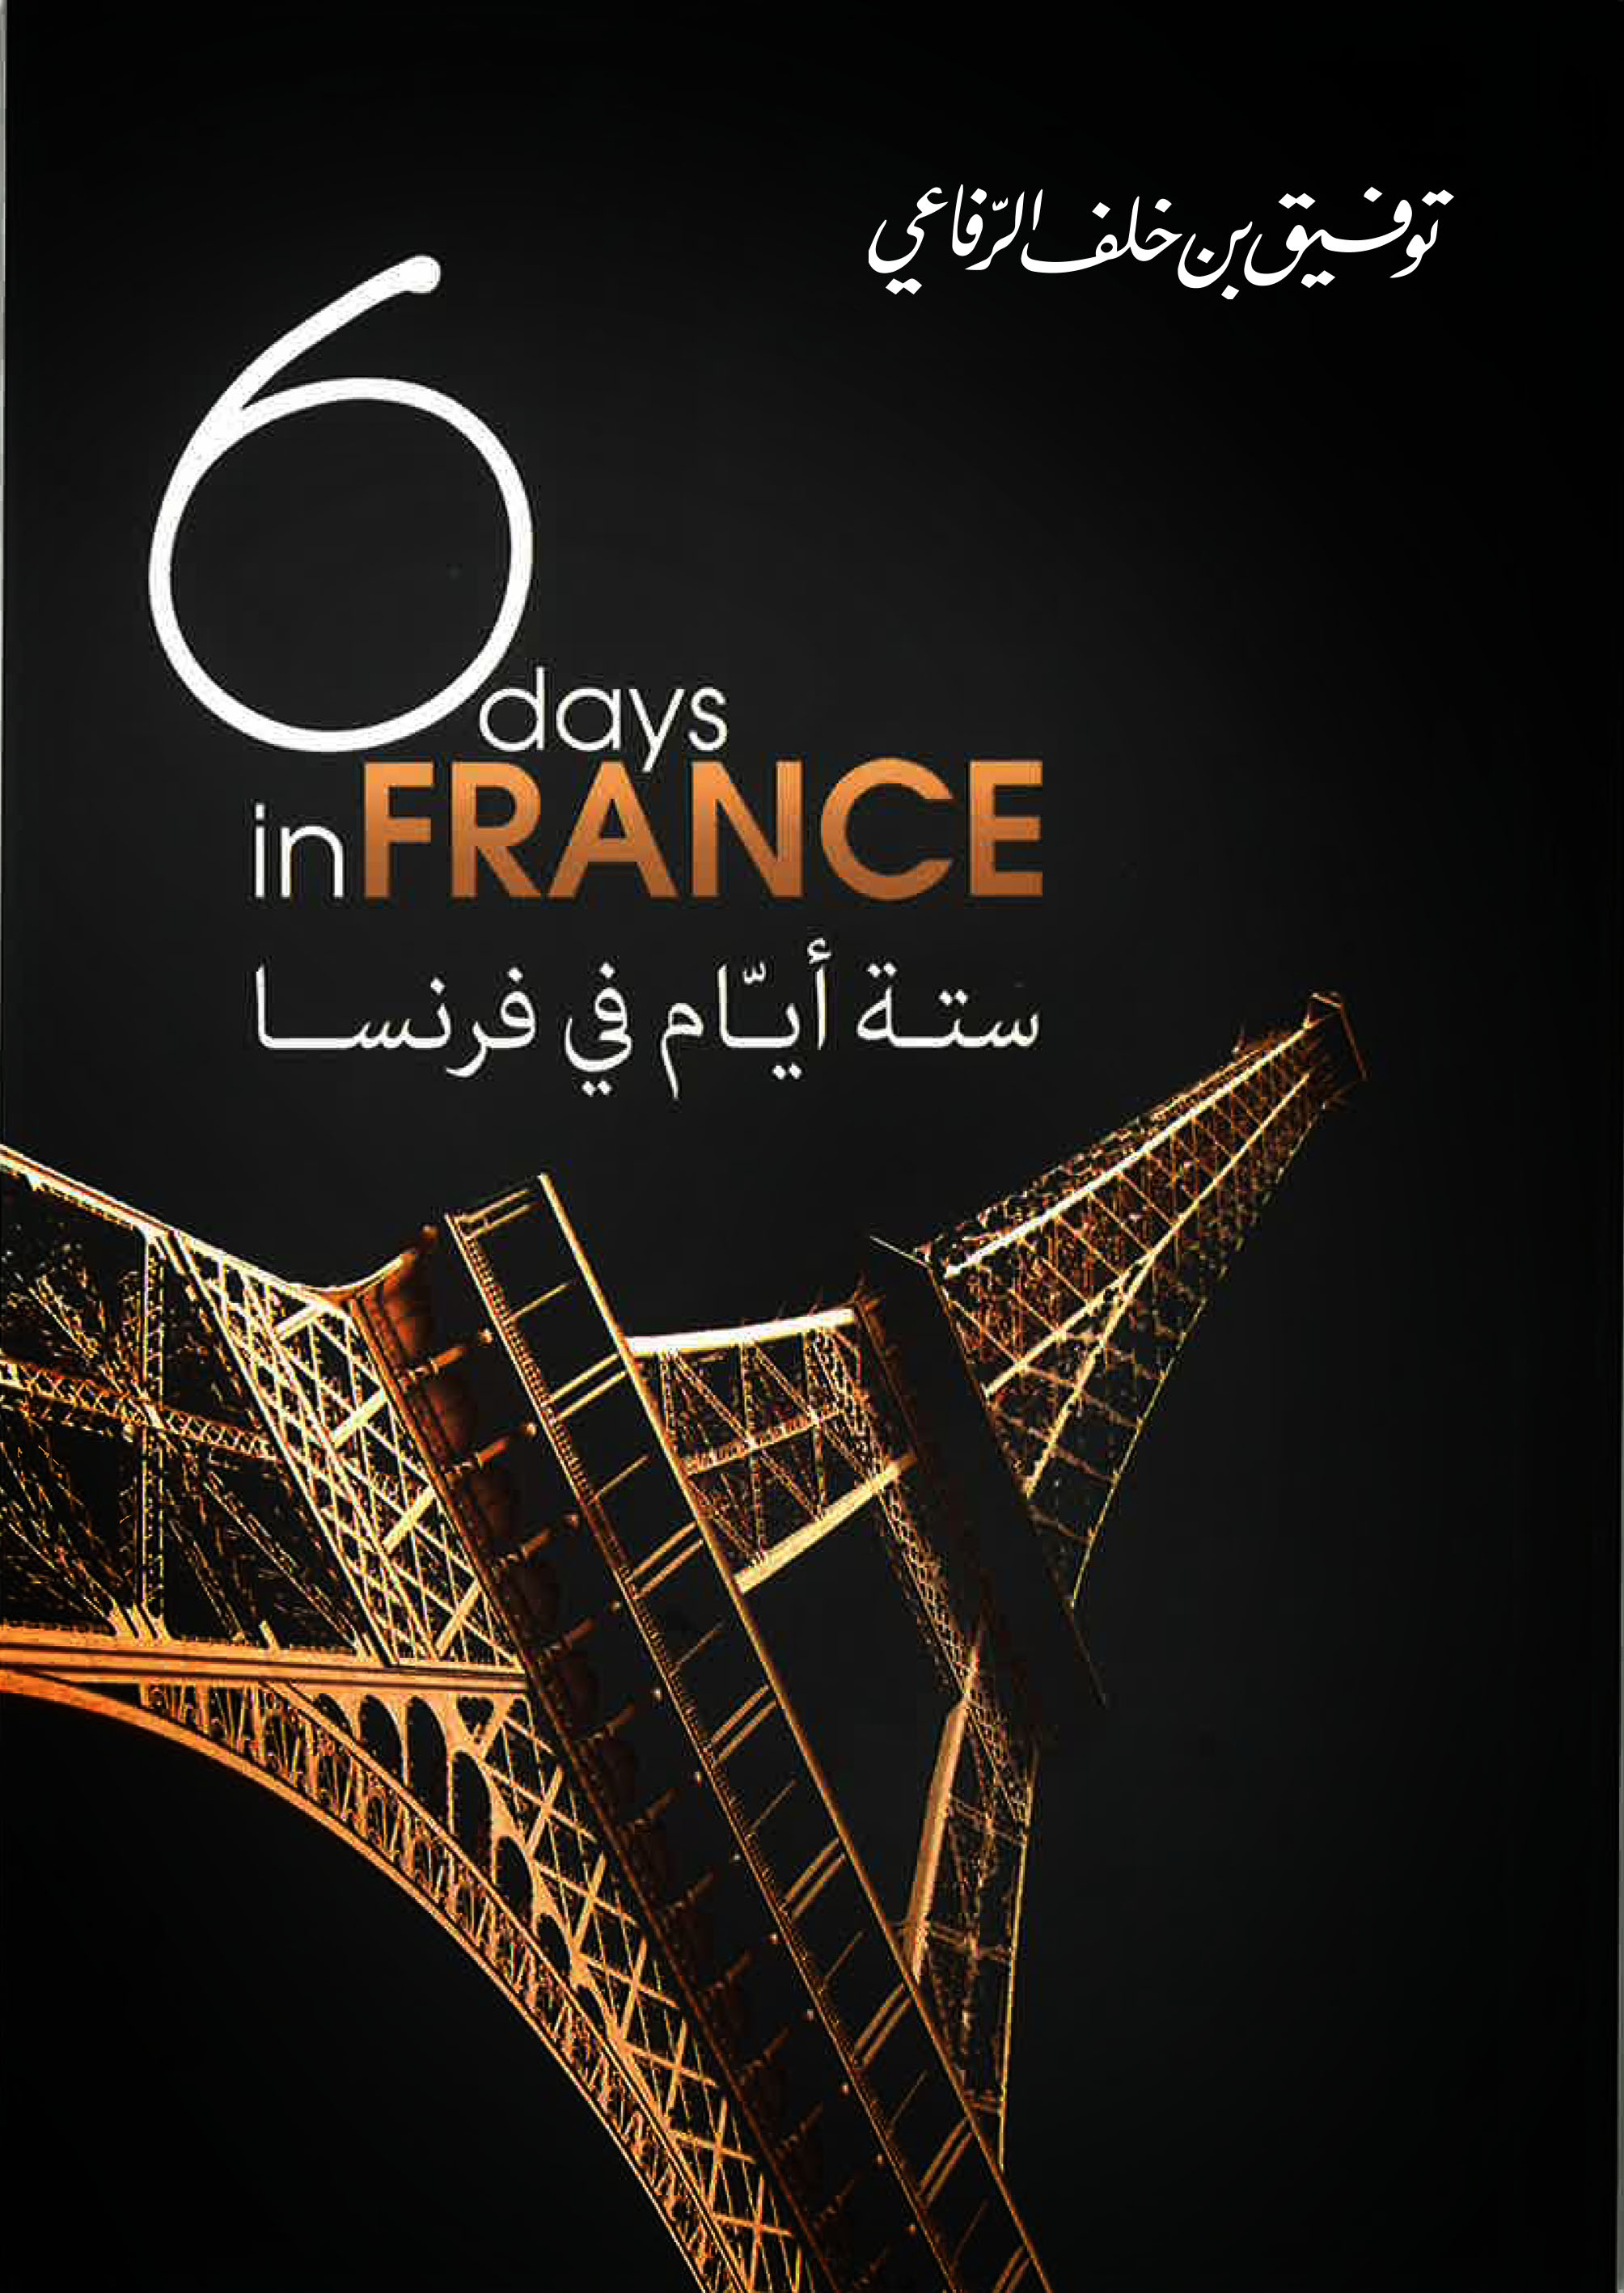 كتاب «ستة أيام في فرنسا»ـ